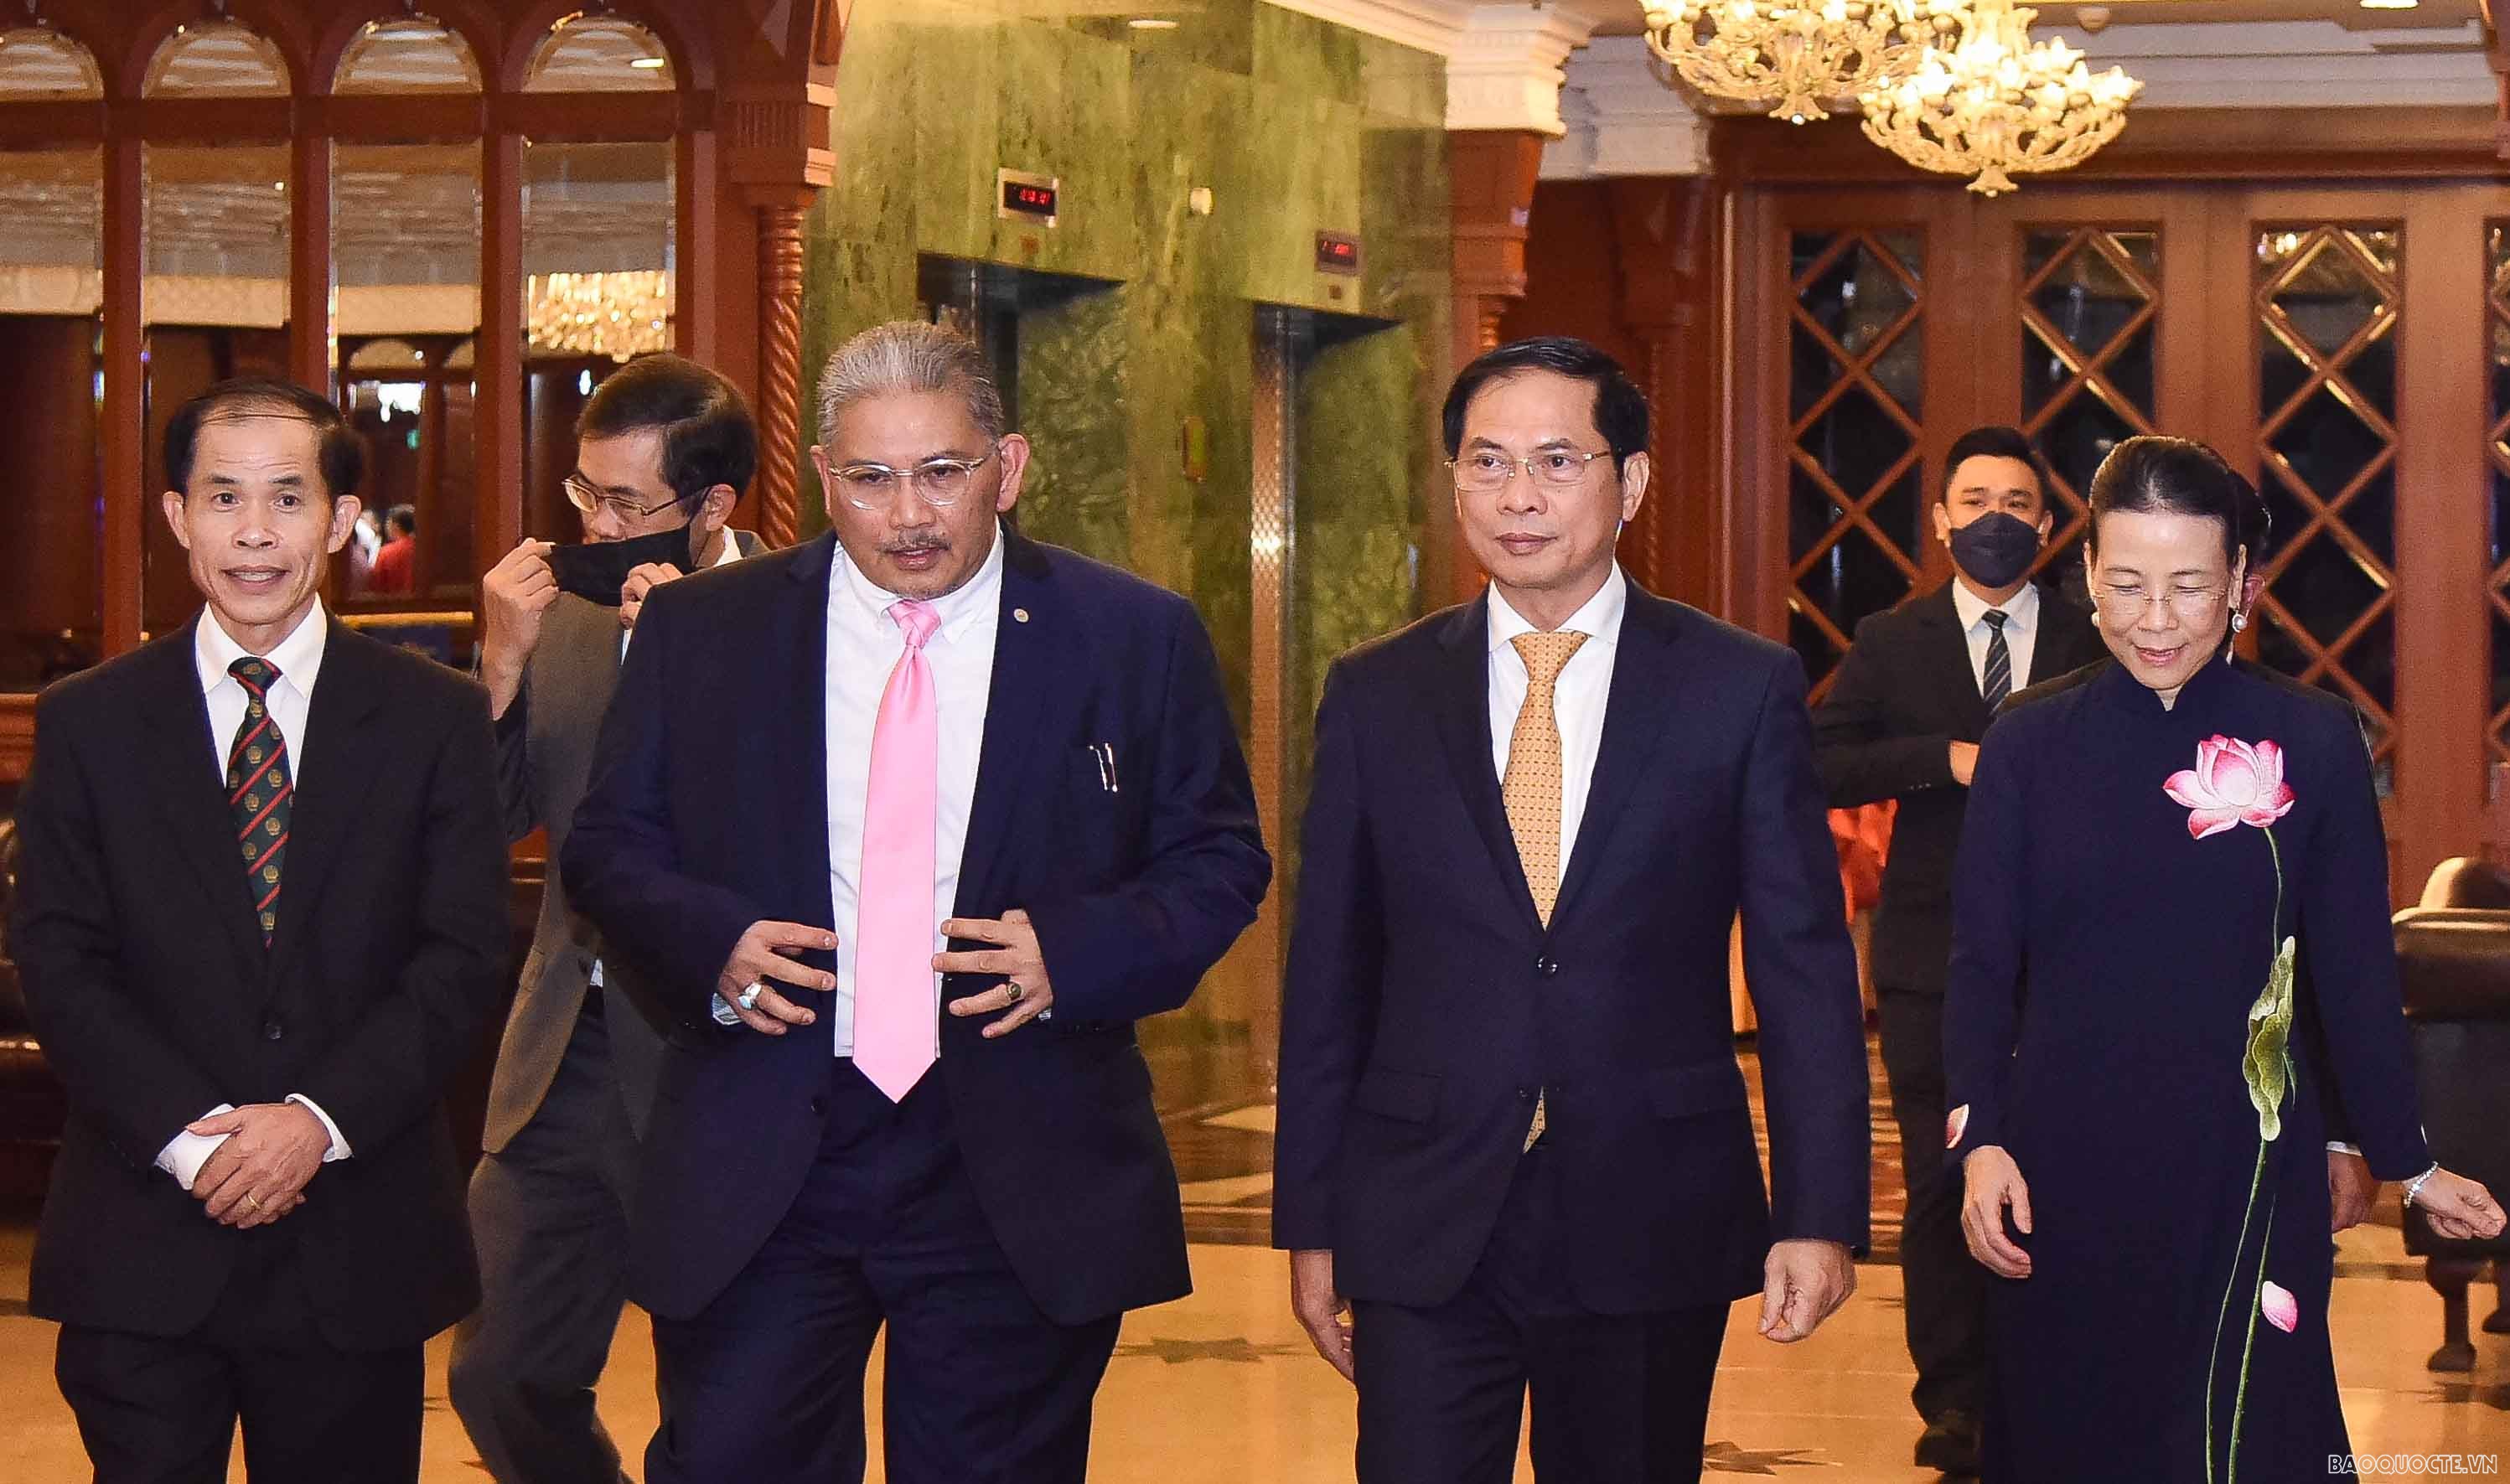 Bộ trưởng Ngoại giao Bùi Thanh Sơn thăm Brunei: Chuyến thăm nhiều kết quả